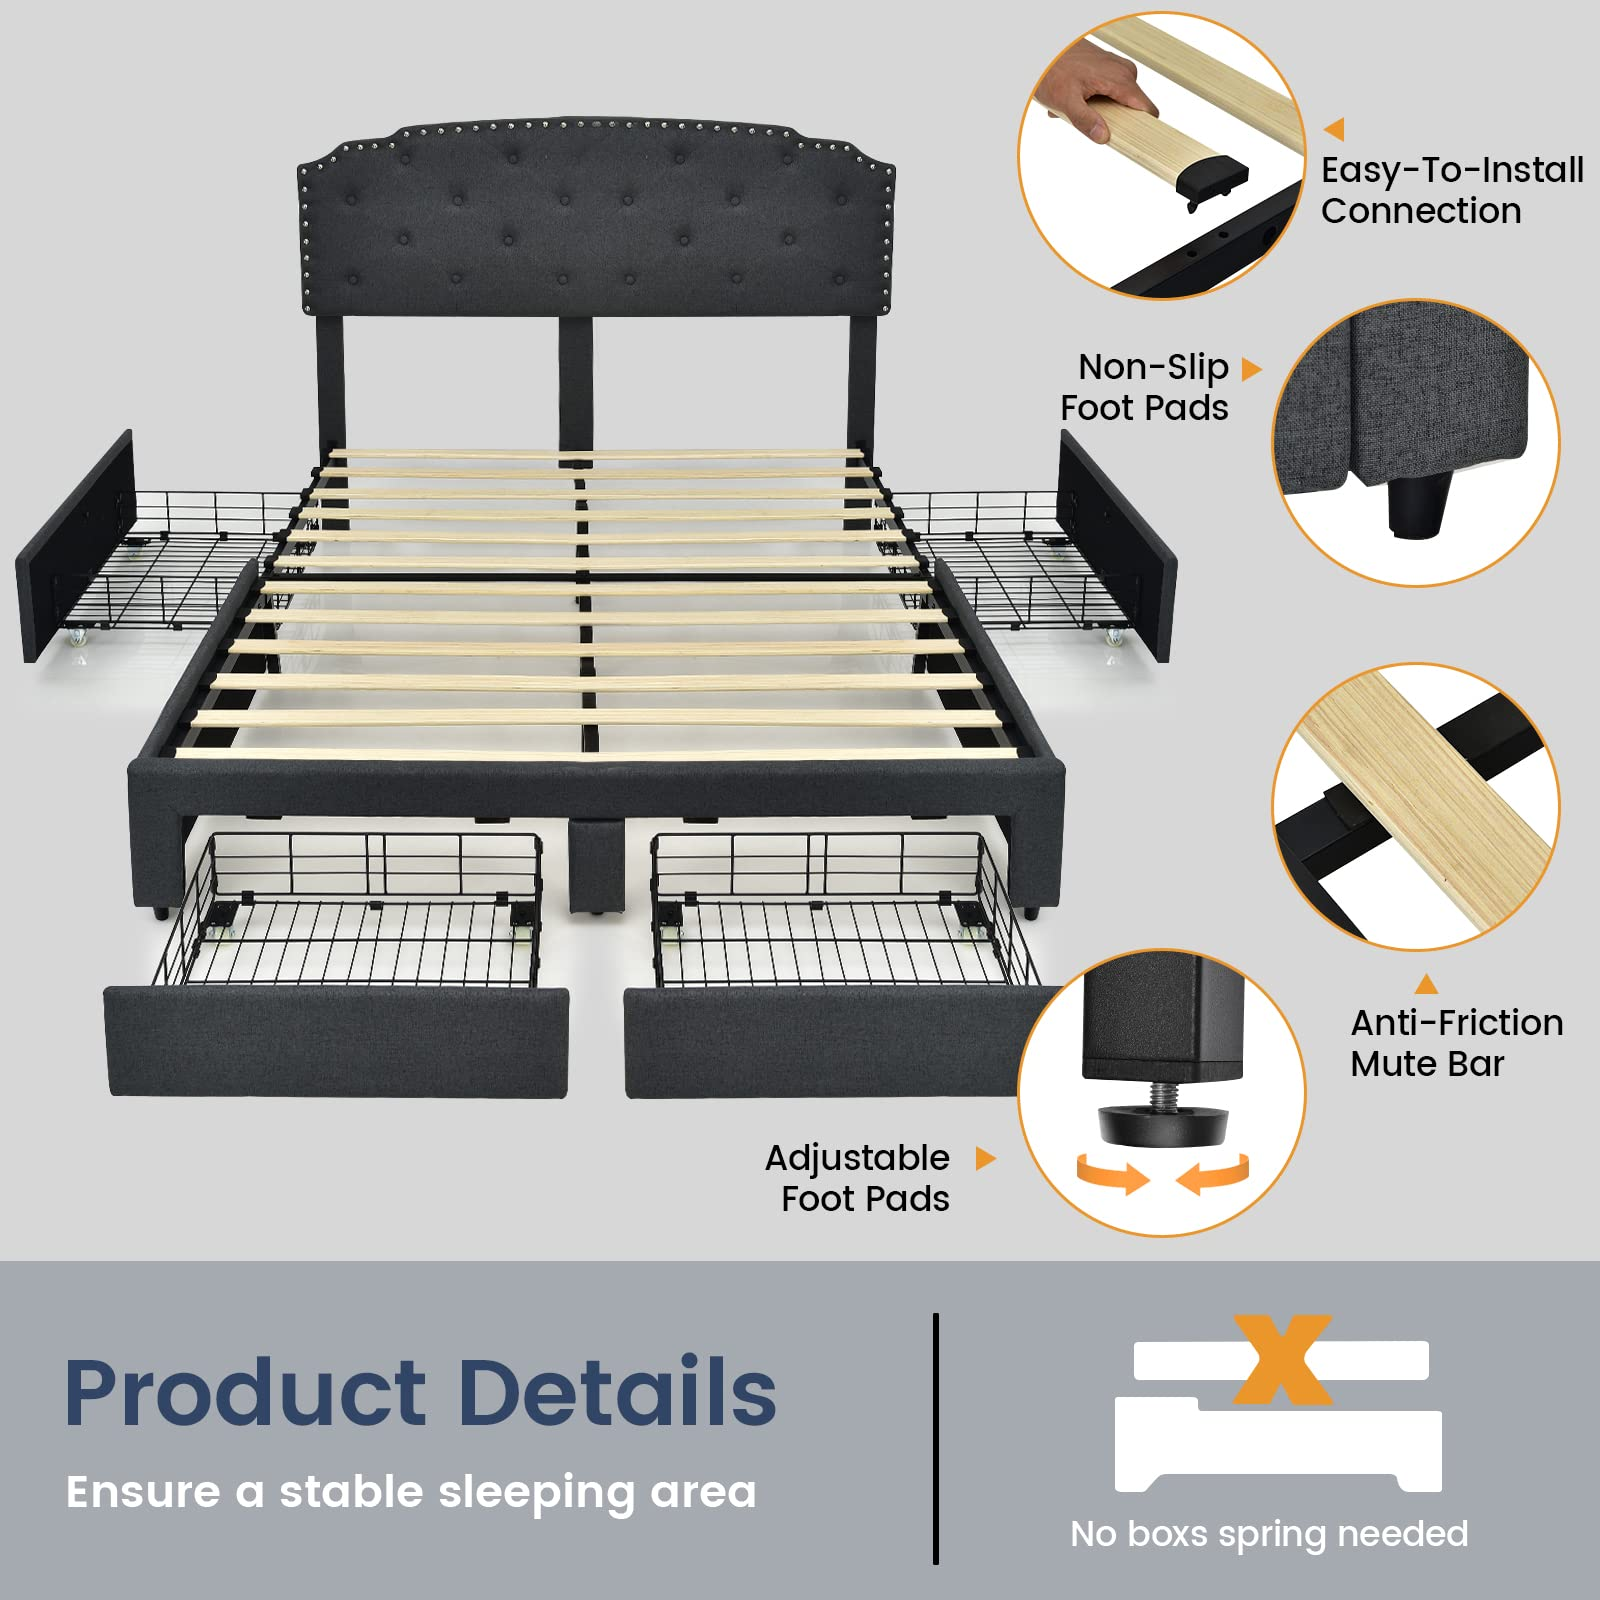 Giantex Upholstered Platform Bed Frame